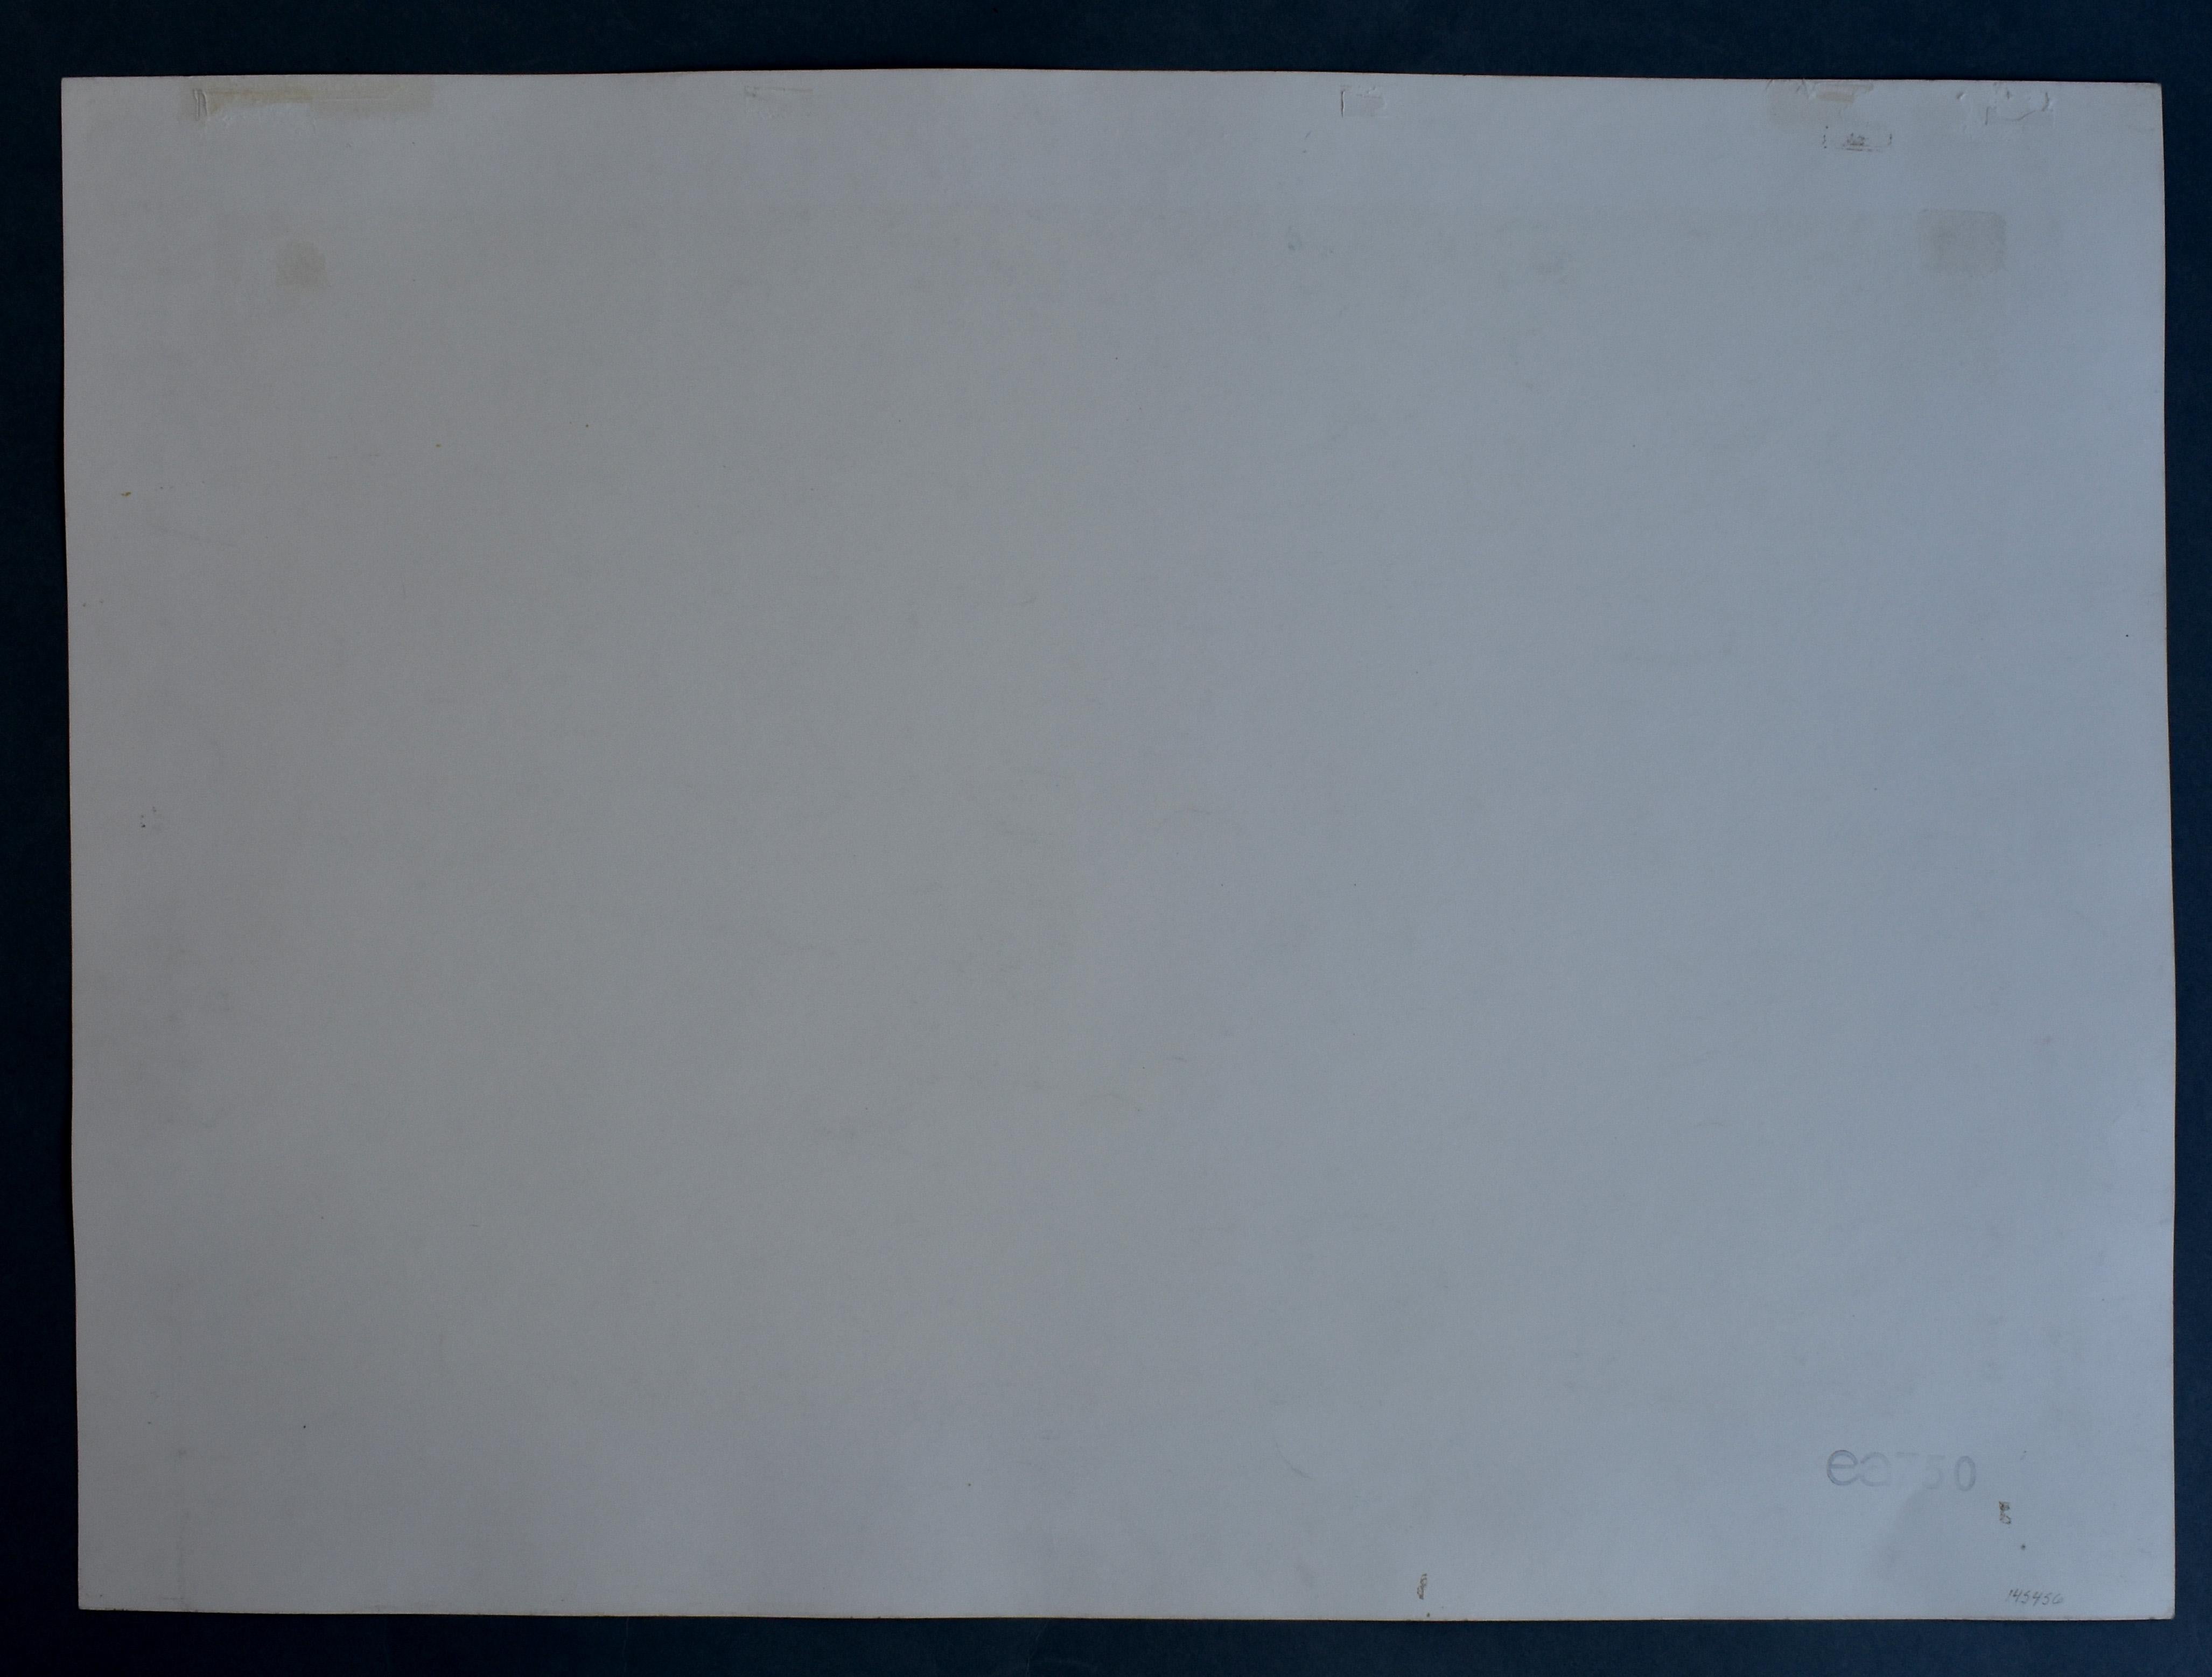 ED (Edward) RUSCHA (né en 1937)
1937 Omaha, Nebraska (américain)
  
Titre : Brasseries, 1970
  
Technique : Sérigraphie originale en couleurs sur papier vélin, signée à la main, datée et numérotée
  
Format du papier : 58,4 x 80,8 cm. / 23 x 31.8